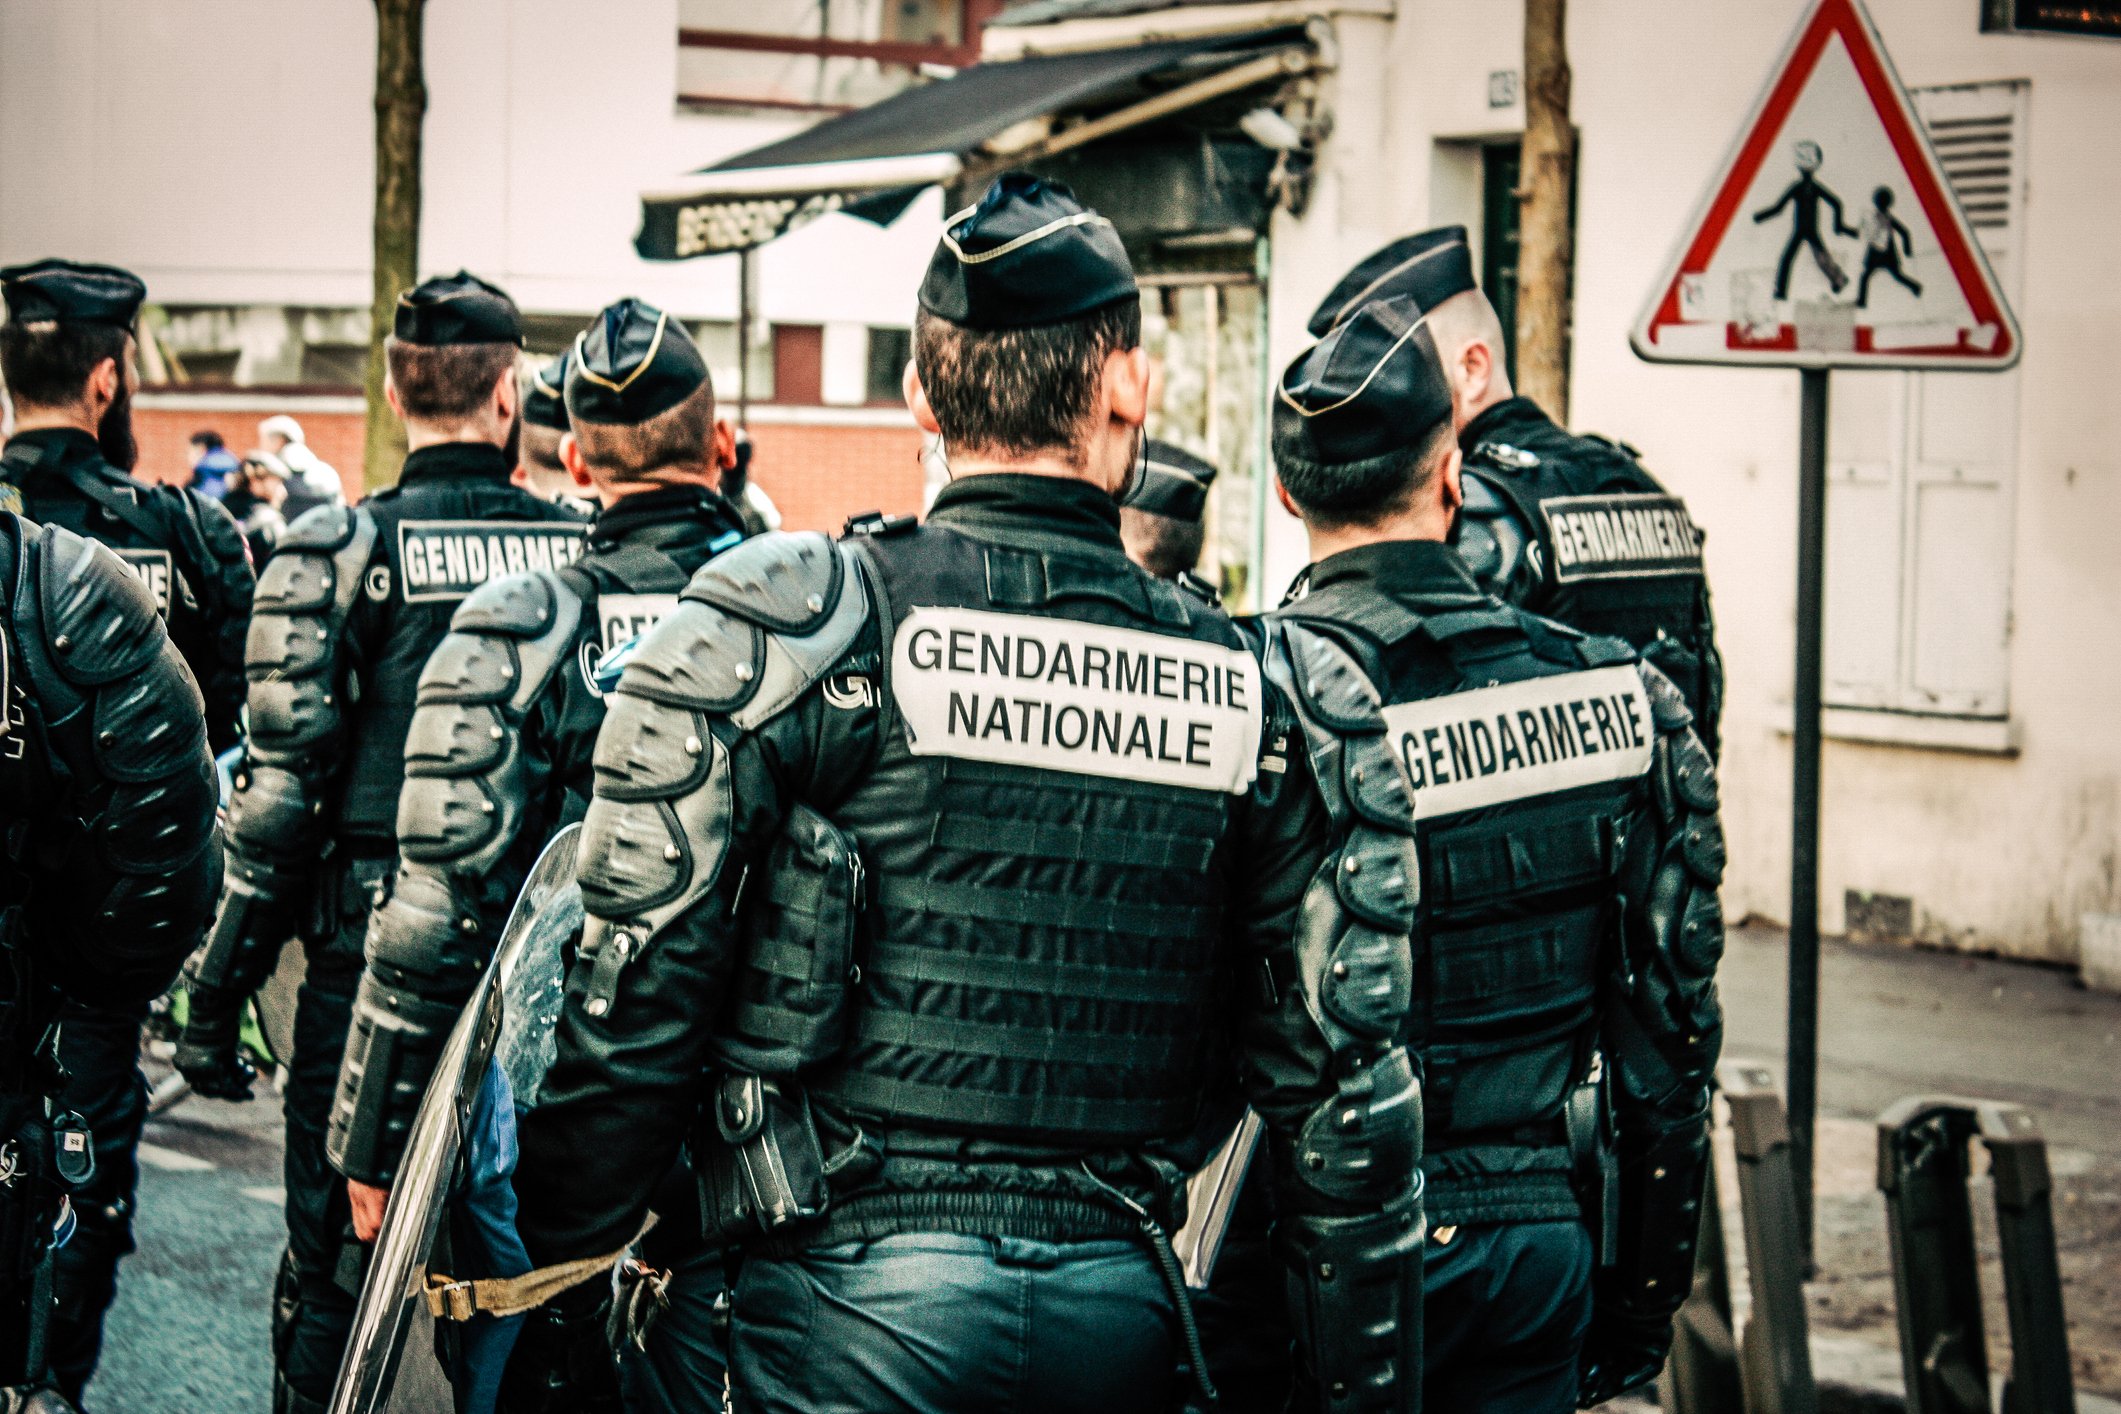 Tragédie Du Puy-de-Dôme mort de trois gendarmes | Photo : Getty Images